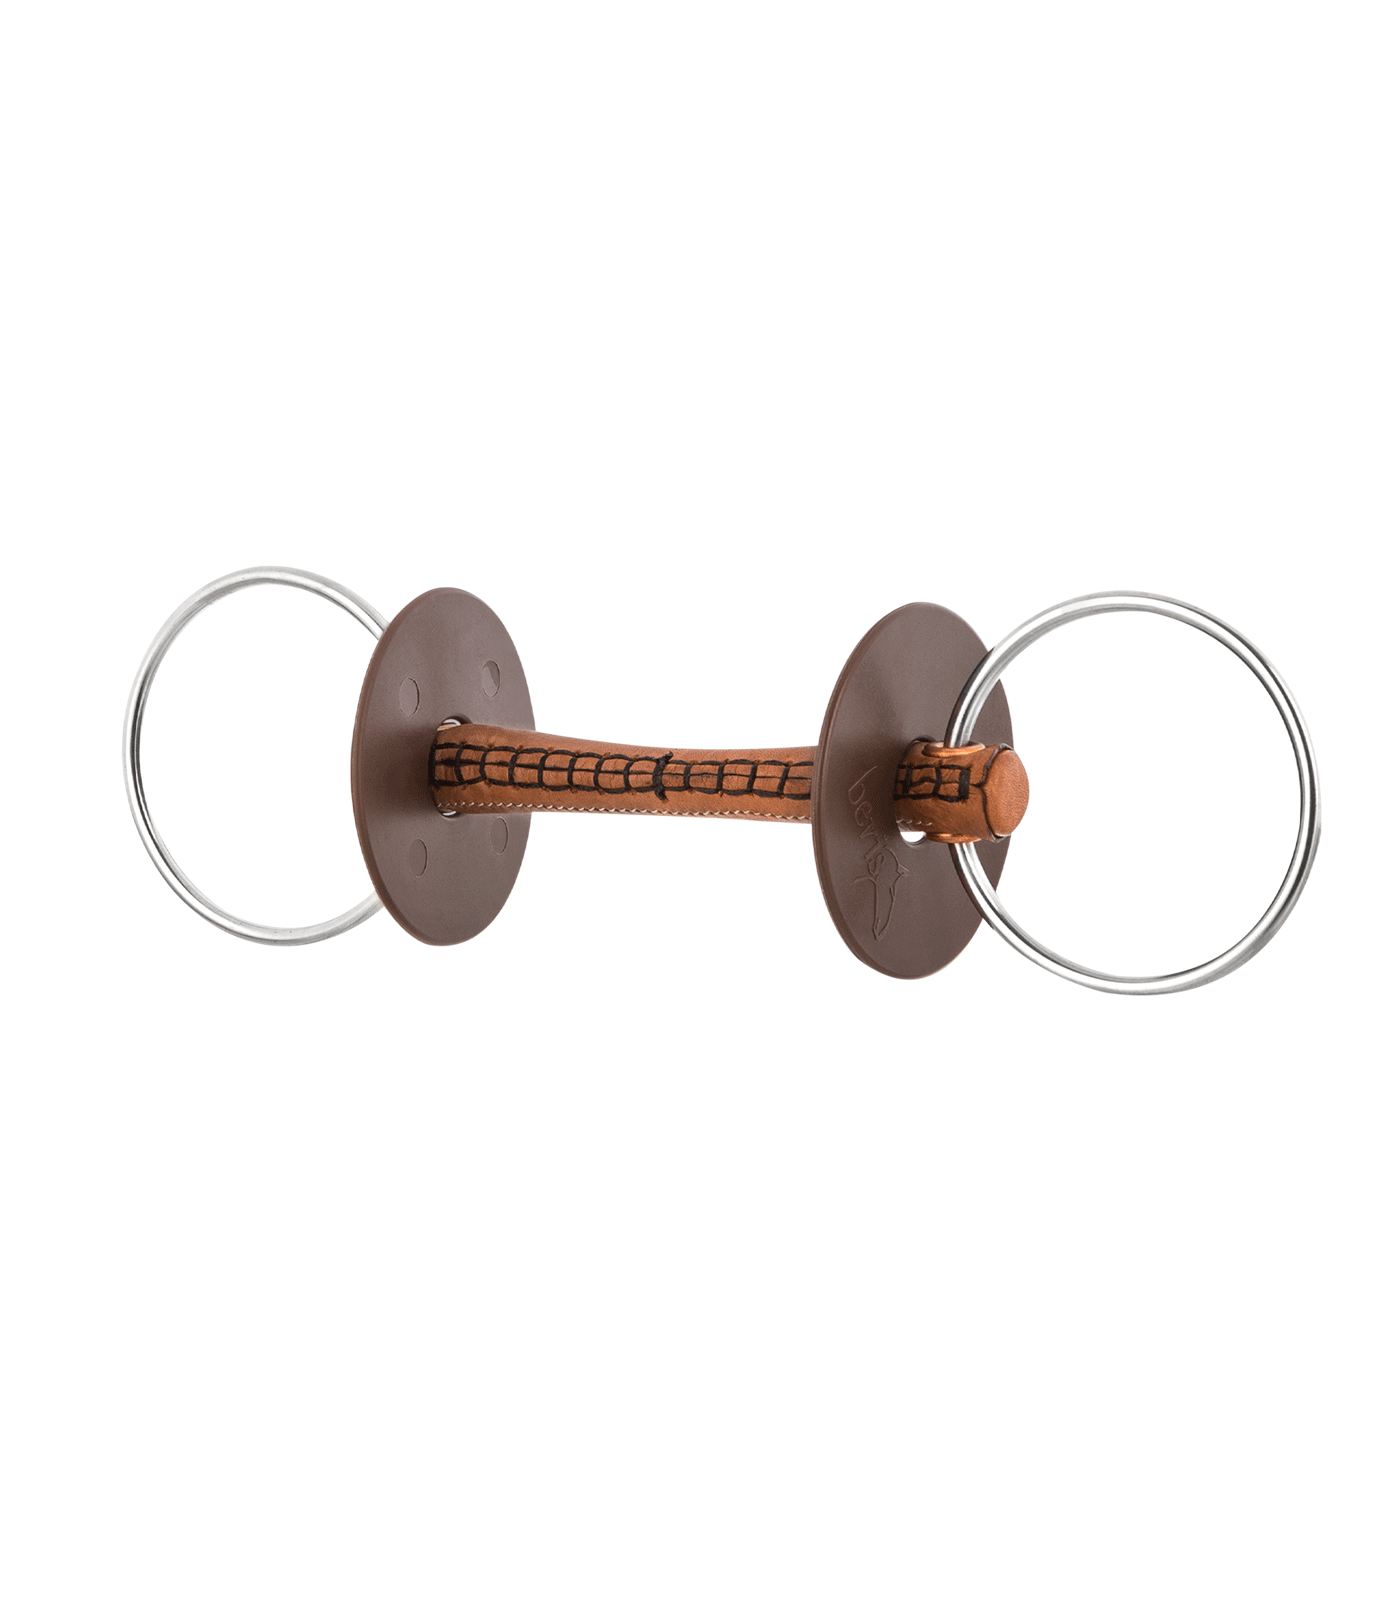 Filetto ad anelli beris con imboccatura ricoperta in cuoio, anello 7,5 cm